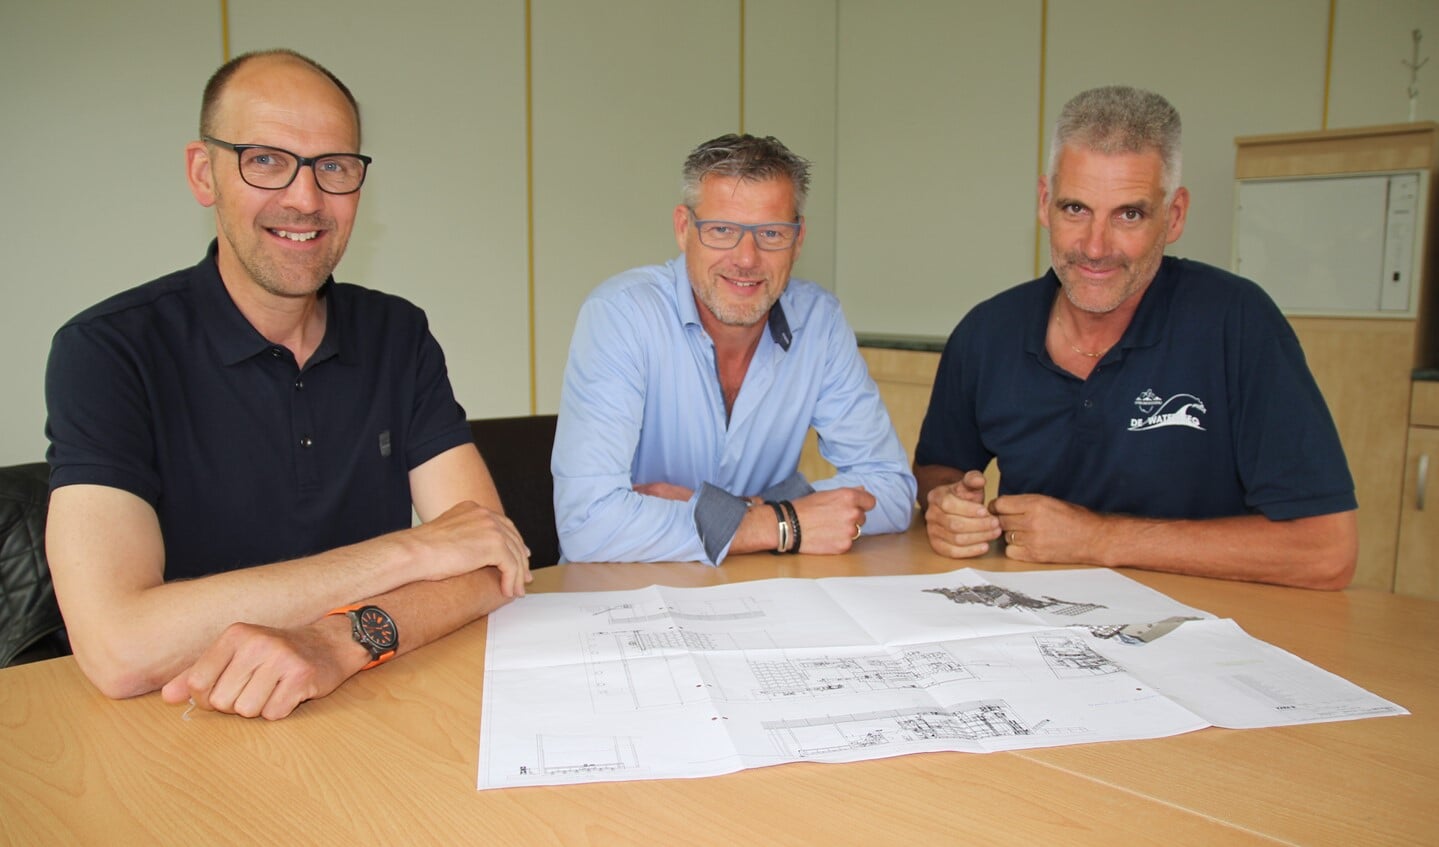 De aanvragers Dirk van Buijtene en Dick Oosthoek met Kees Ammerlaan, de kweker voor wie de installatie bedoeld is.